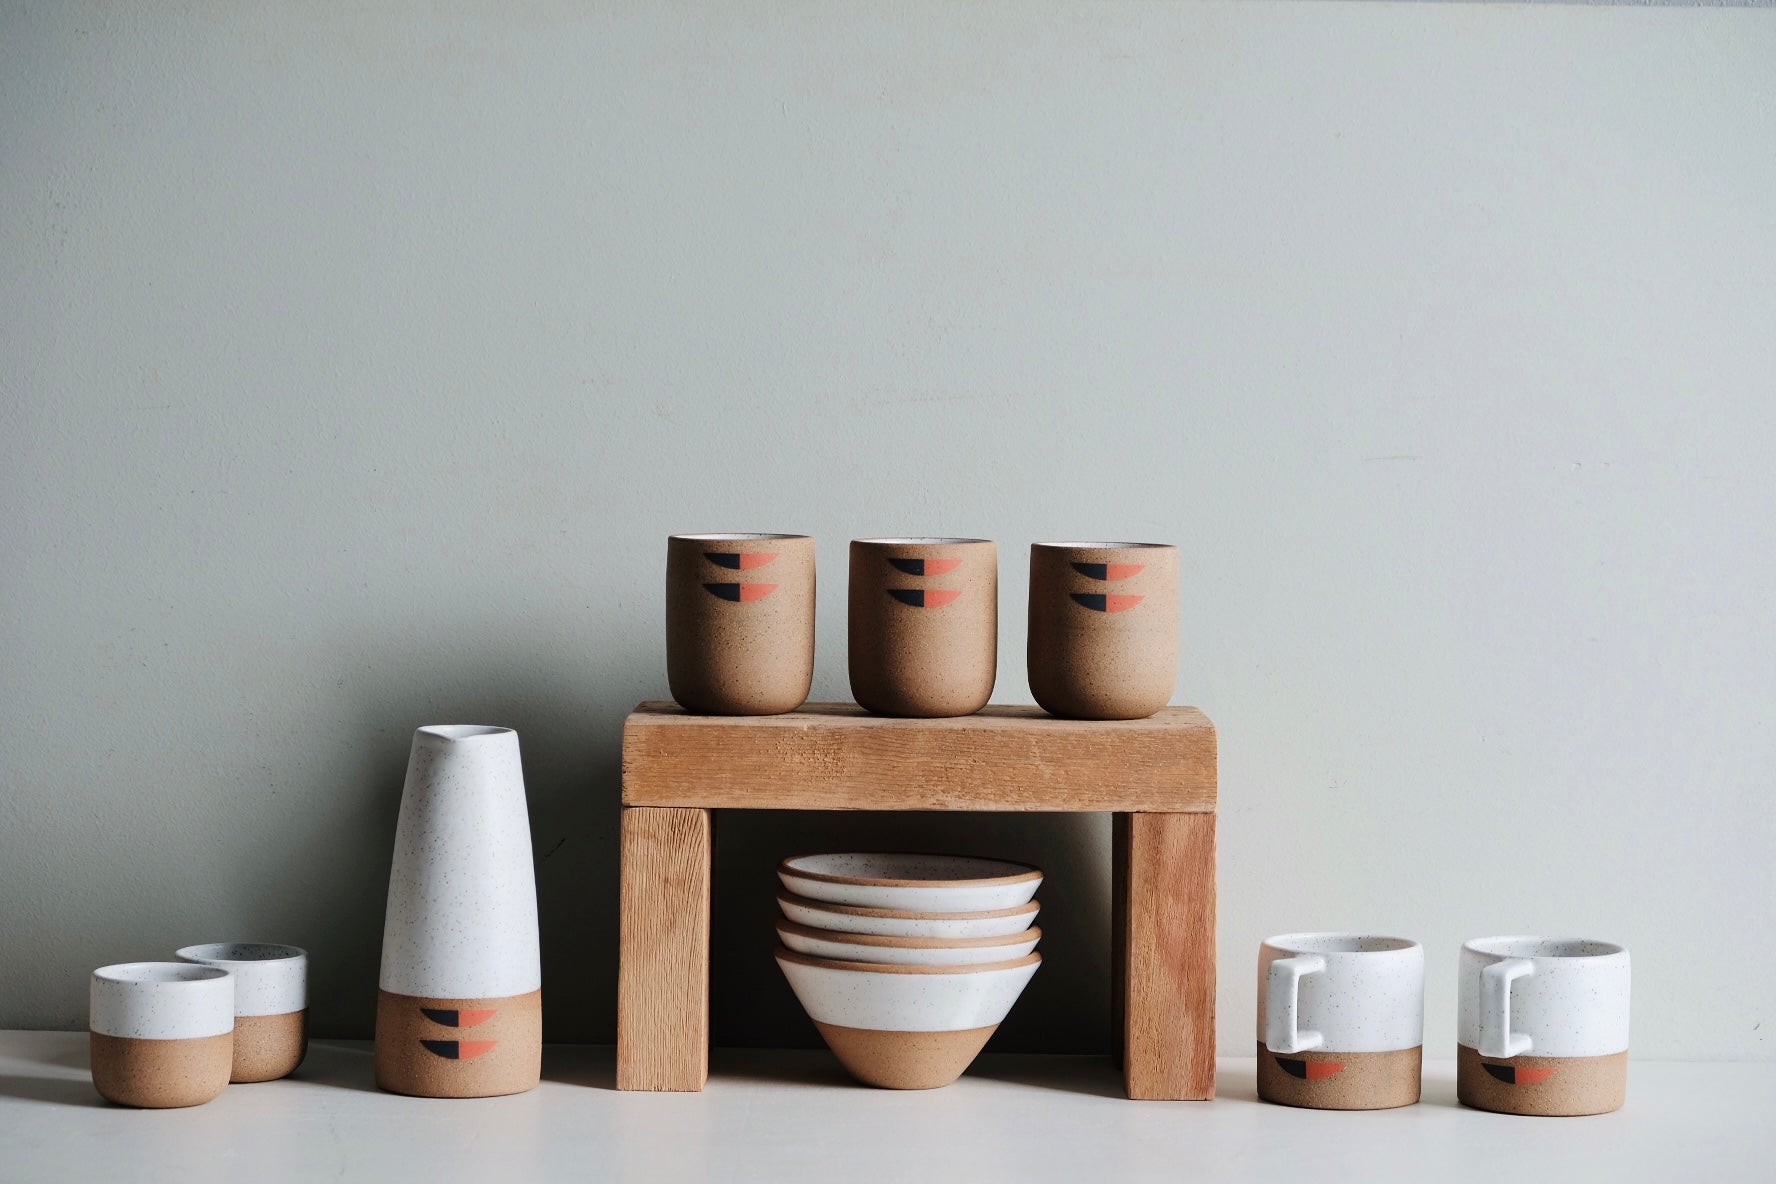 A grouping of handmade ceramics.